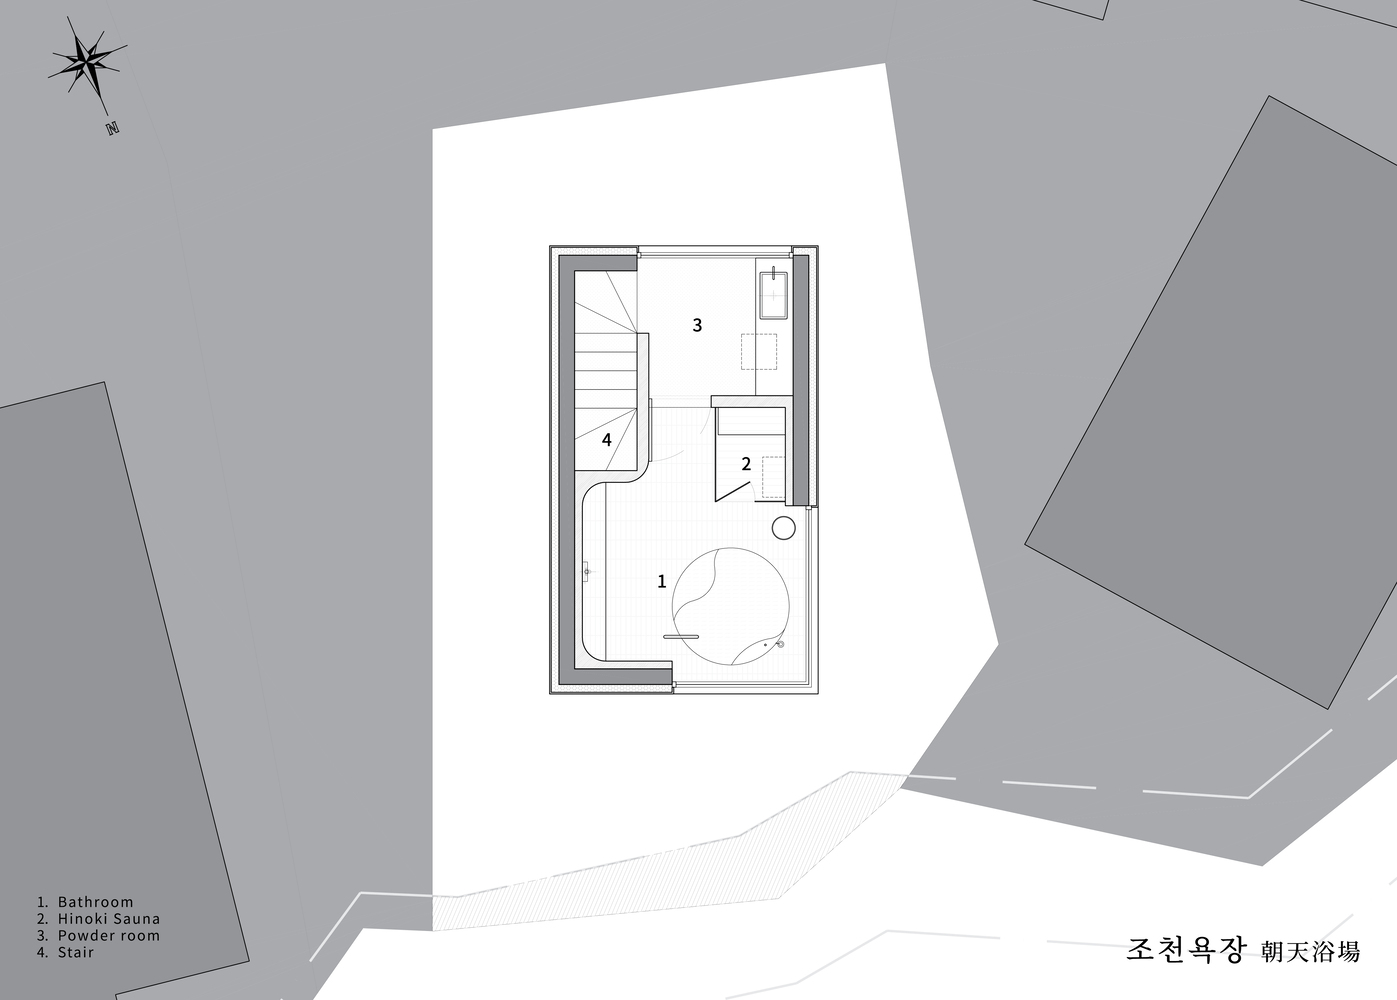 Atelier ITCH,浴场设计案例,韩国,济州岛,朝天浴场,小型浴场